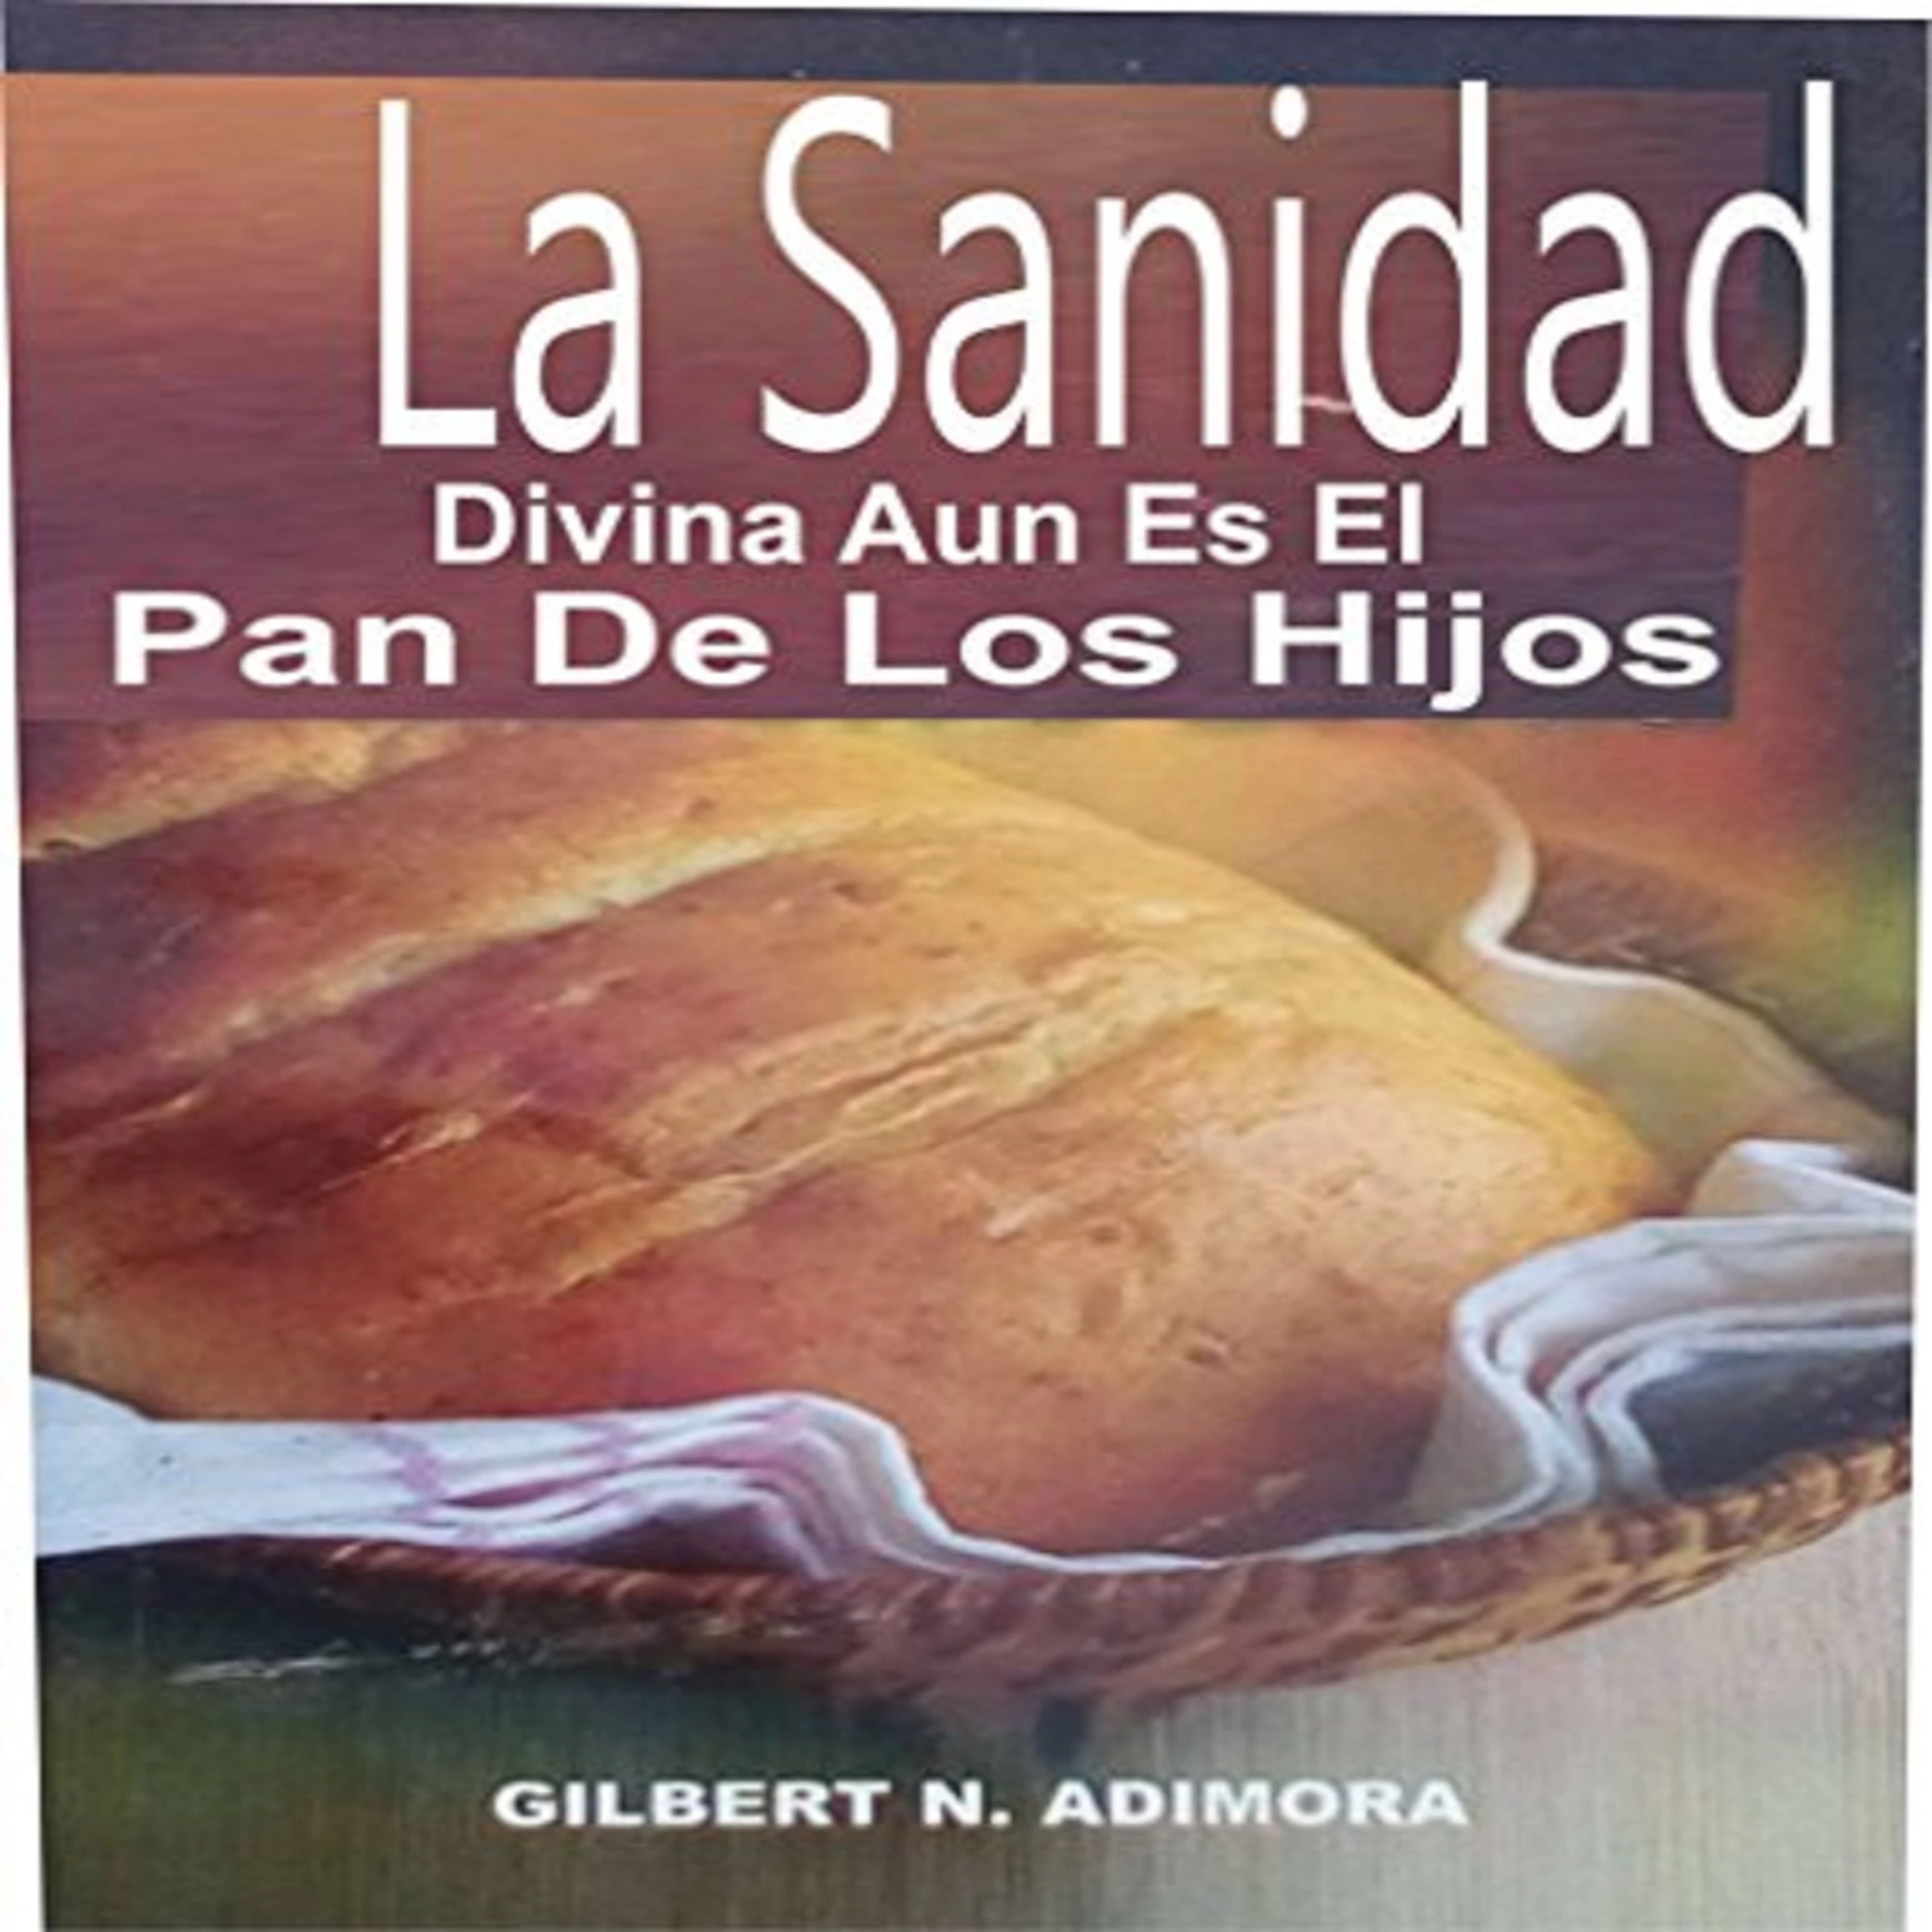 La Sanidad Divina Aun Es El Pan De Los Hijos Audiobook by Gilbert N. Adimora